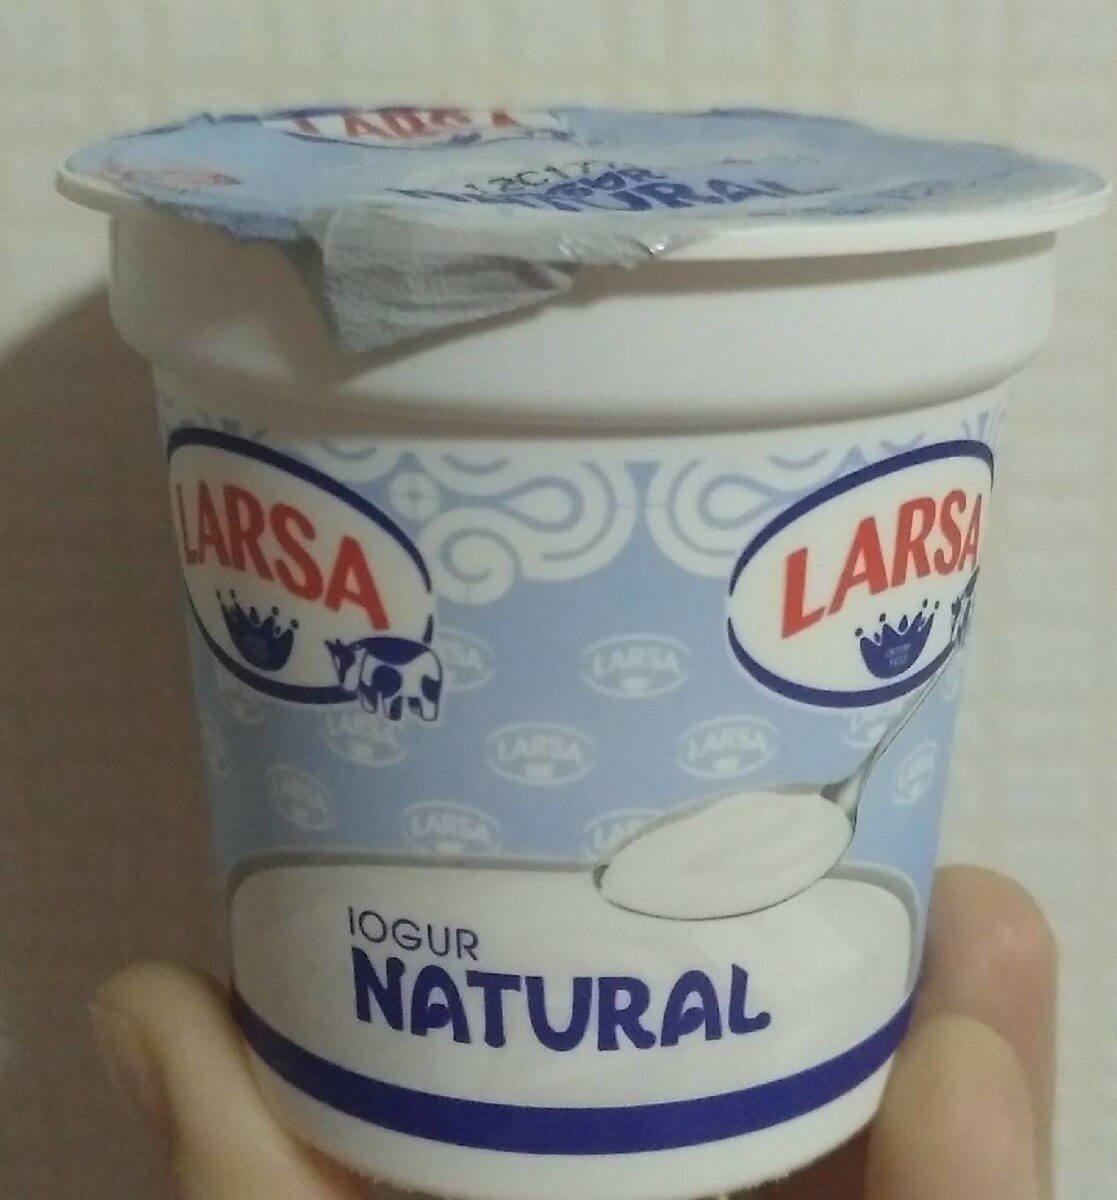 Yogur natural - Product - es